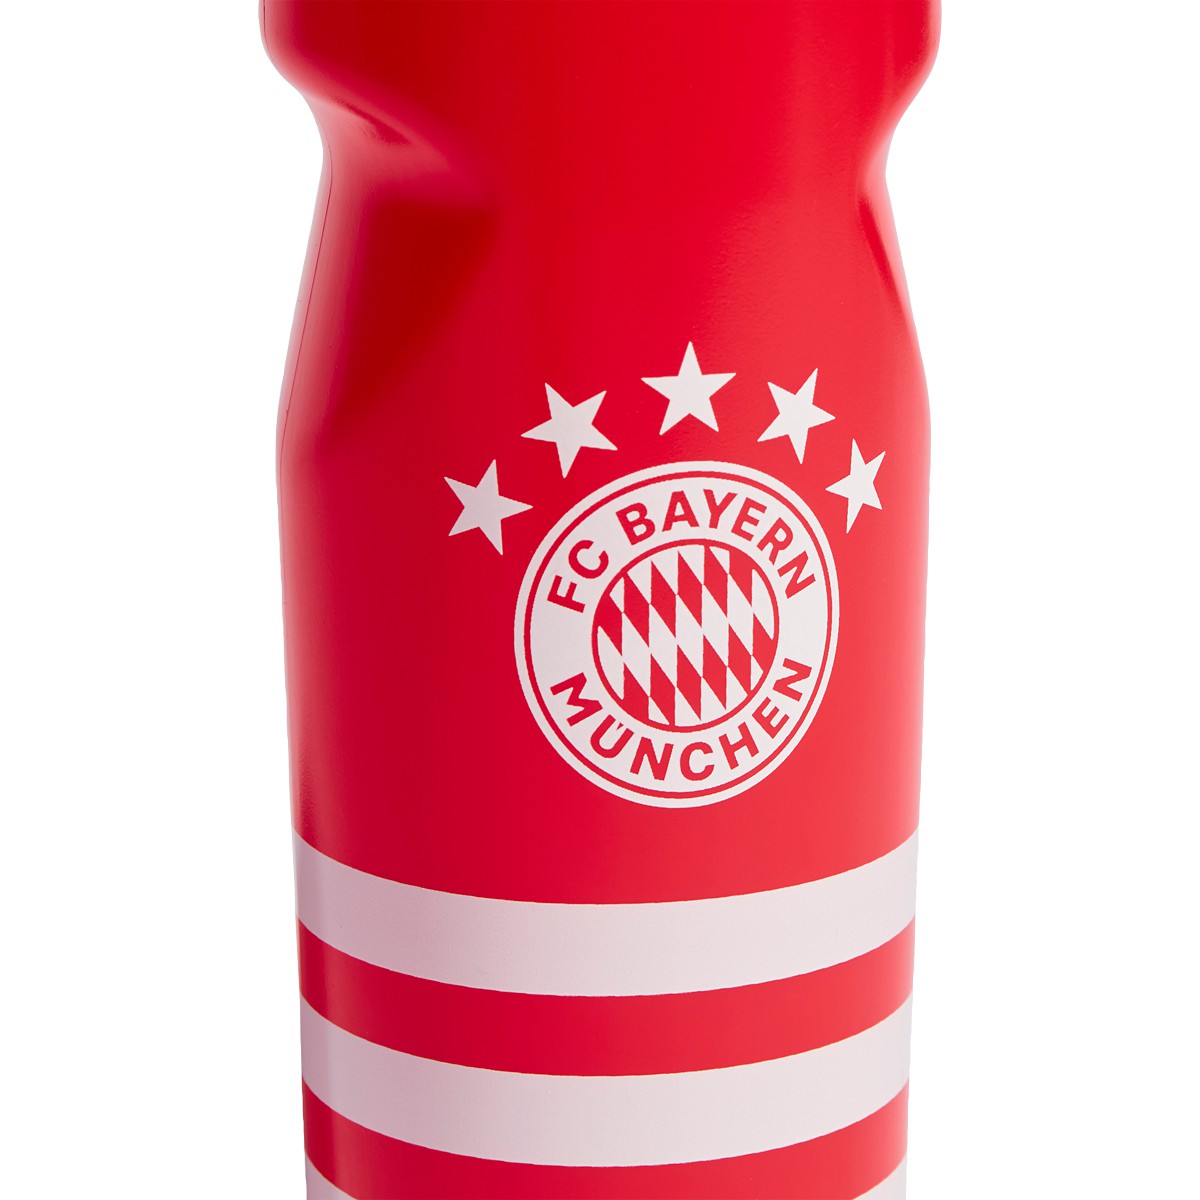 Adidas Bayern Munich Water Bottle